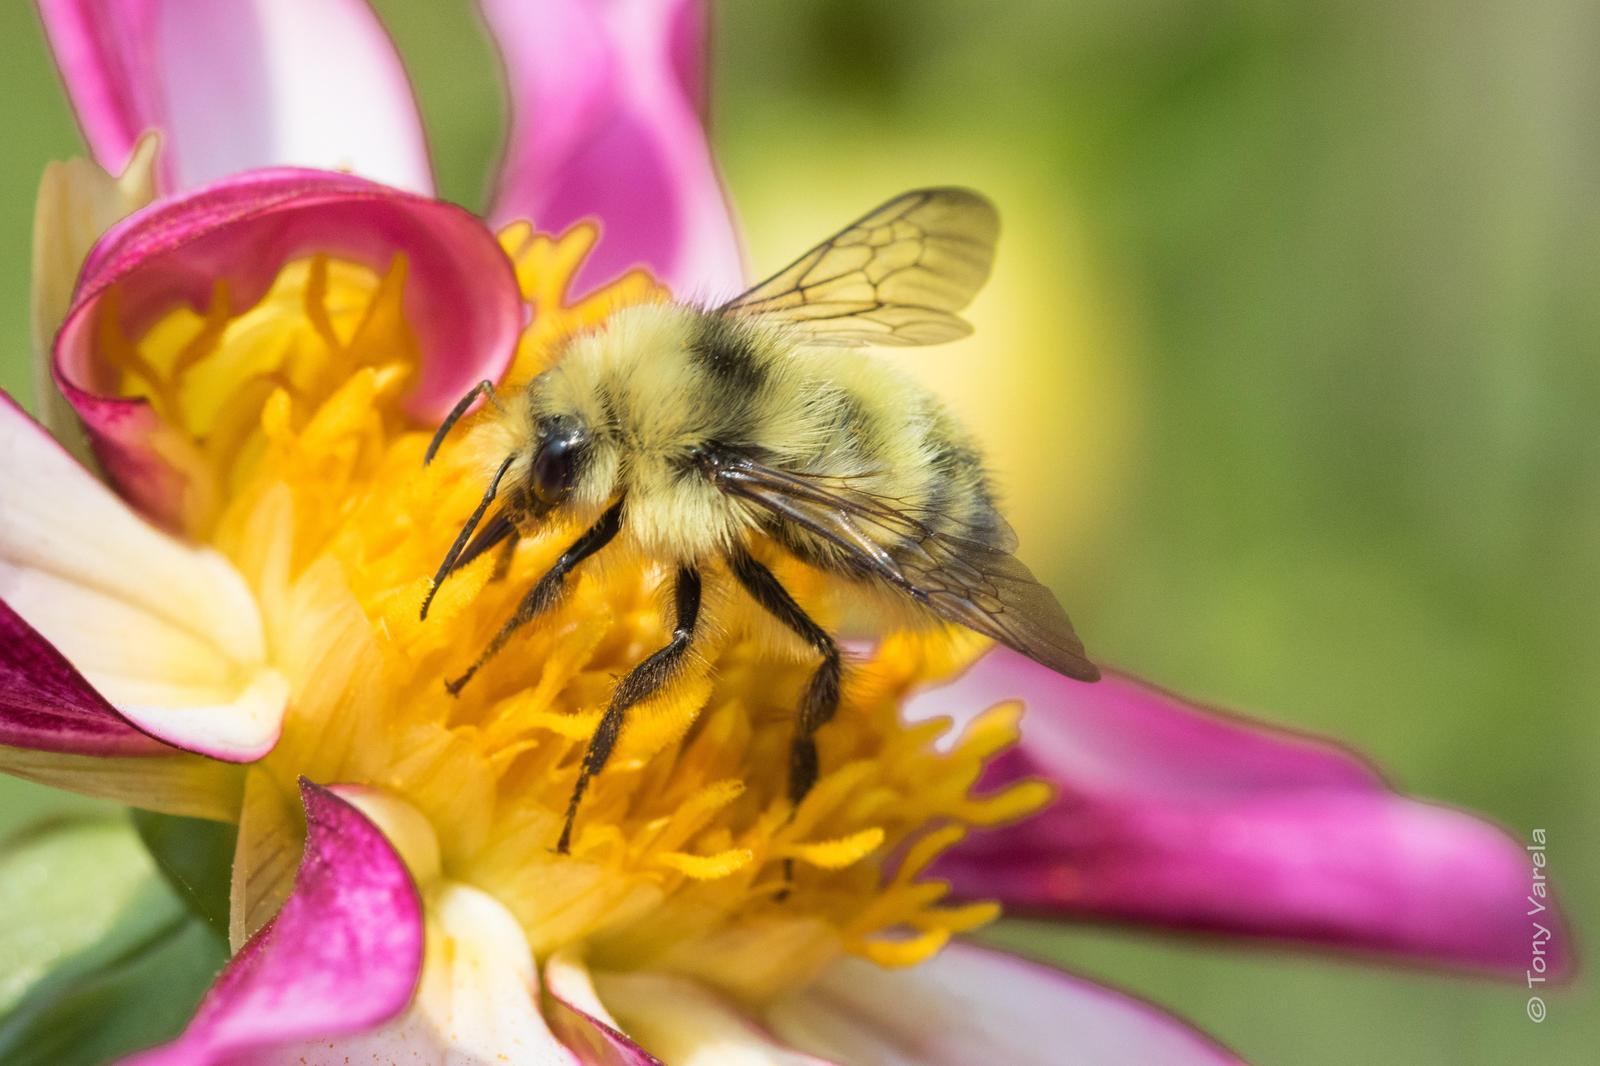 Western bumble bee Photo by Tony Varela